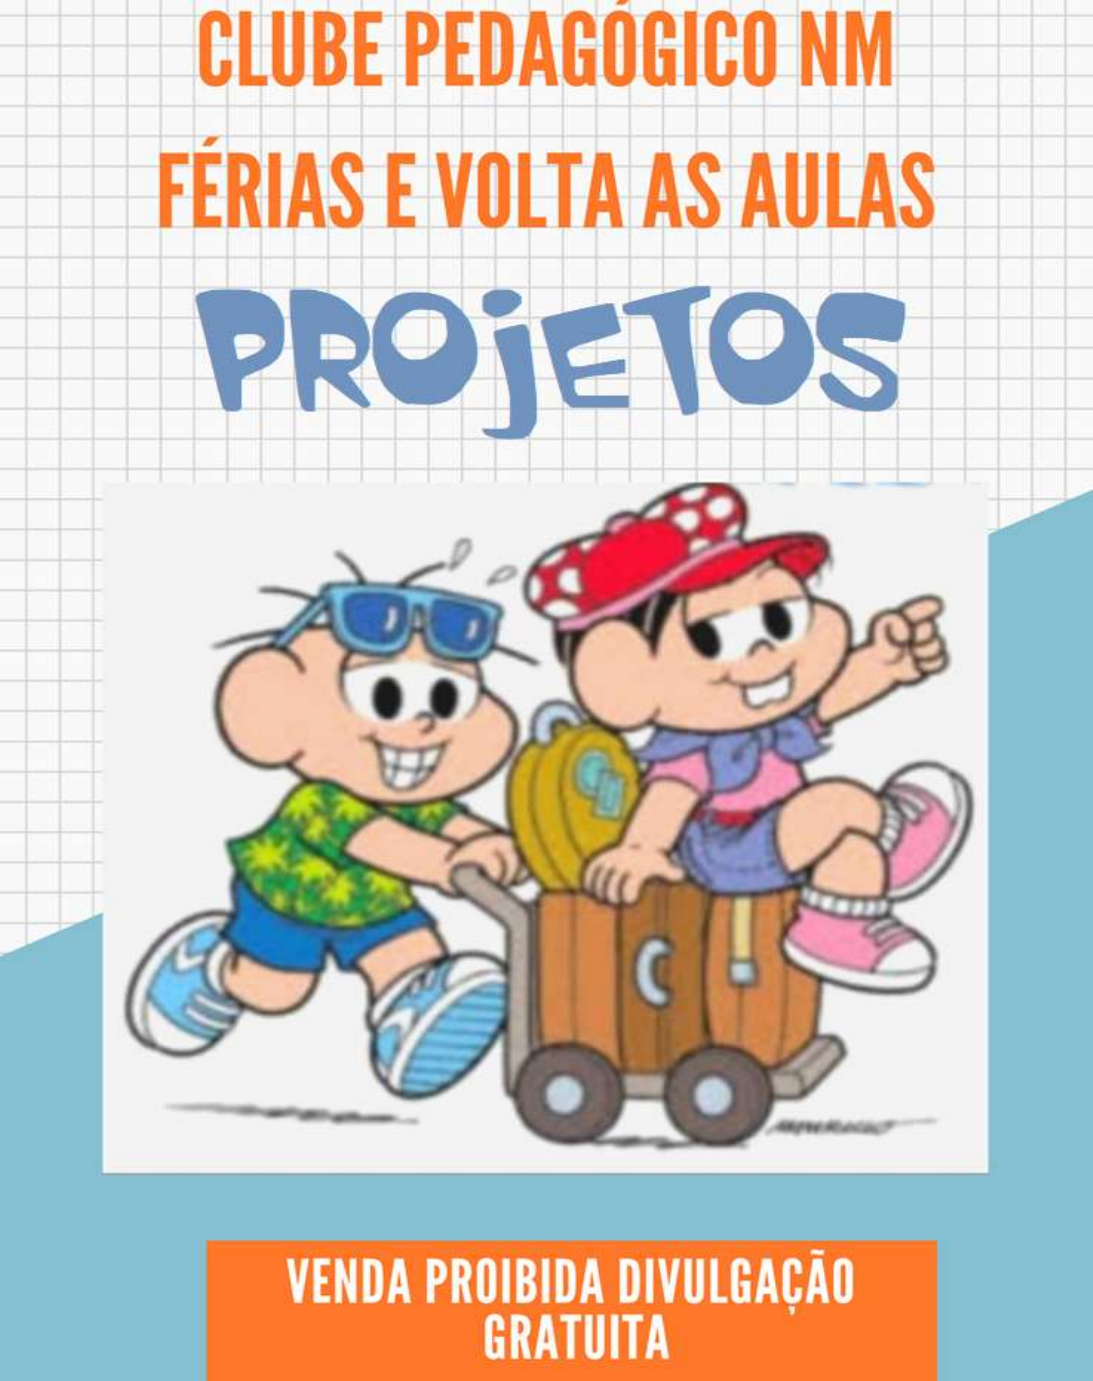 Cartoon Network Brasil - Uhuuuuu! Marque aquele amigo que sempre